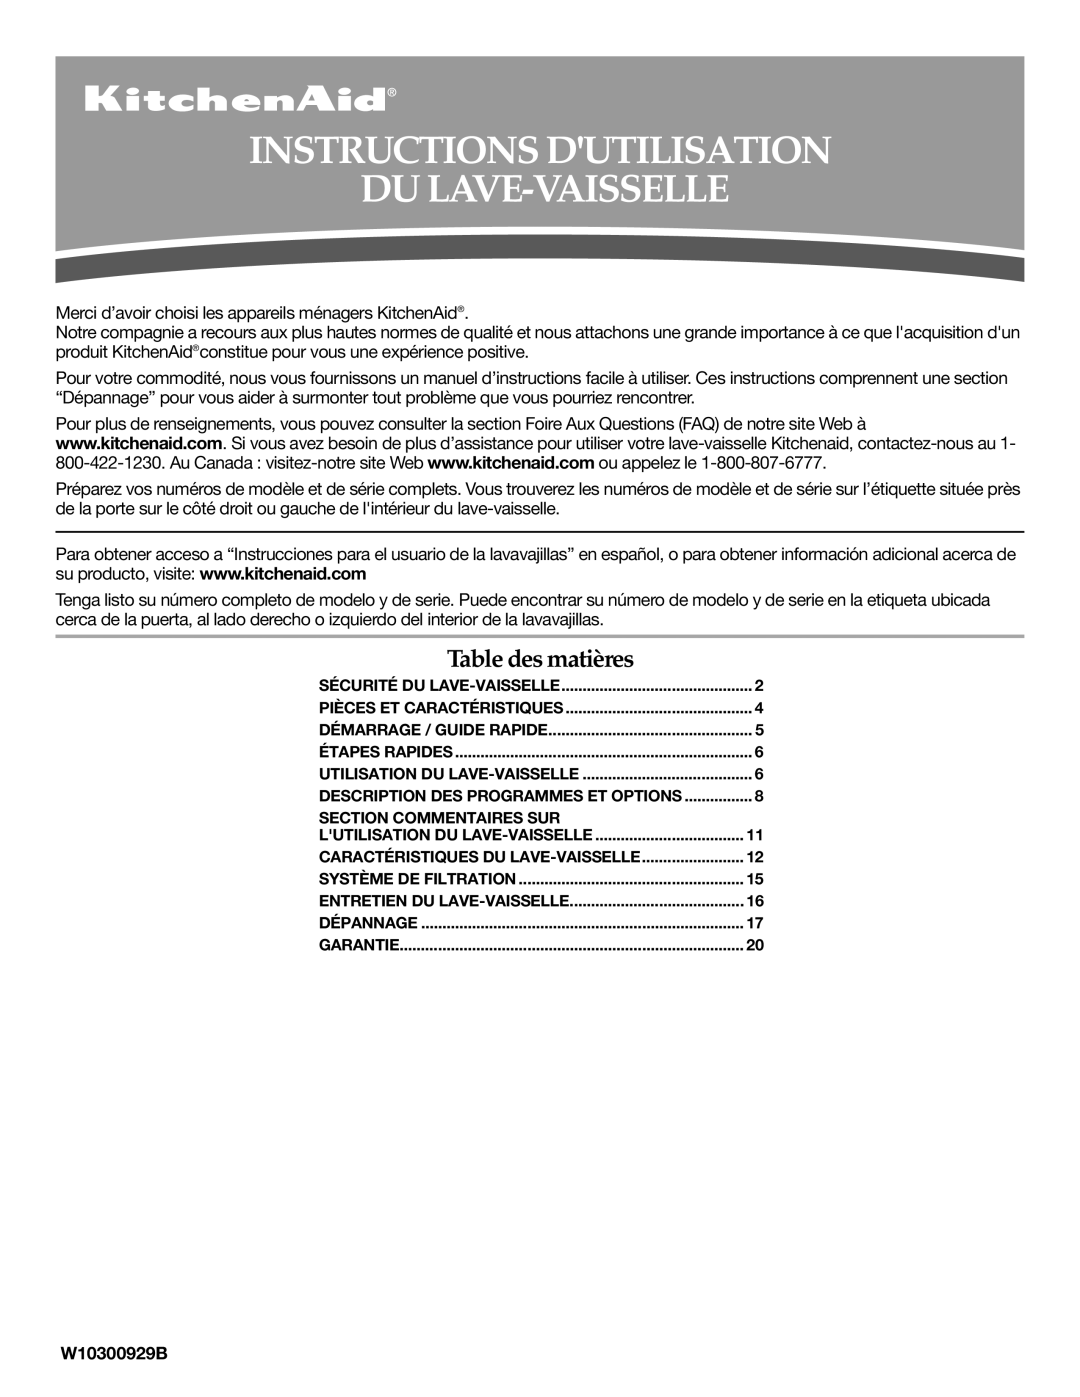 Whirlpool W10300929B warranty Instructions Dutilisation Du Lave-Vaisselle, Table des matières 